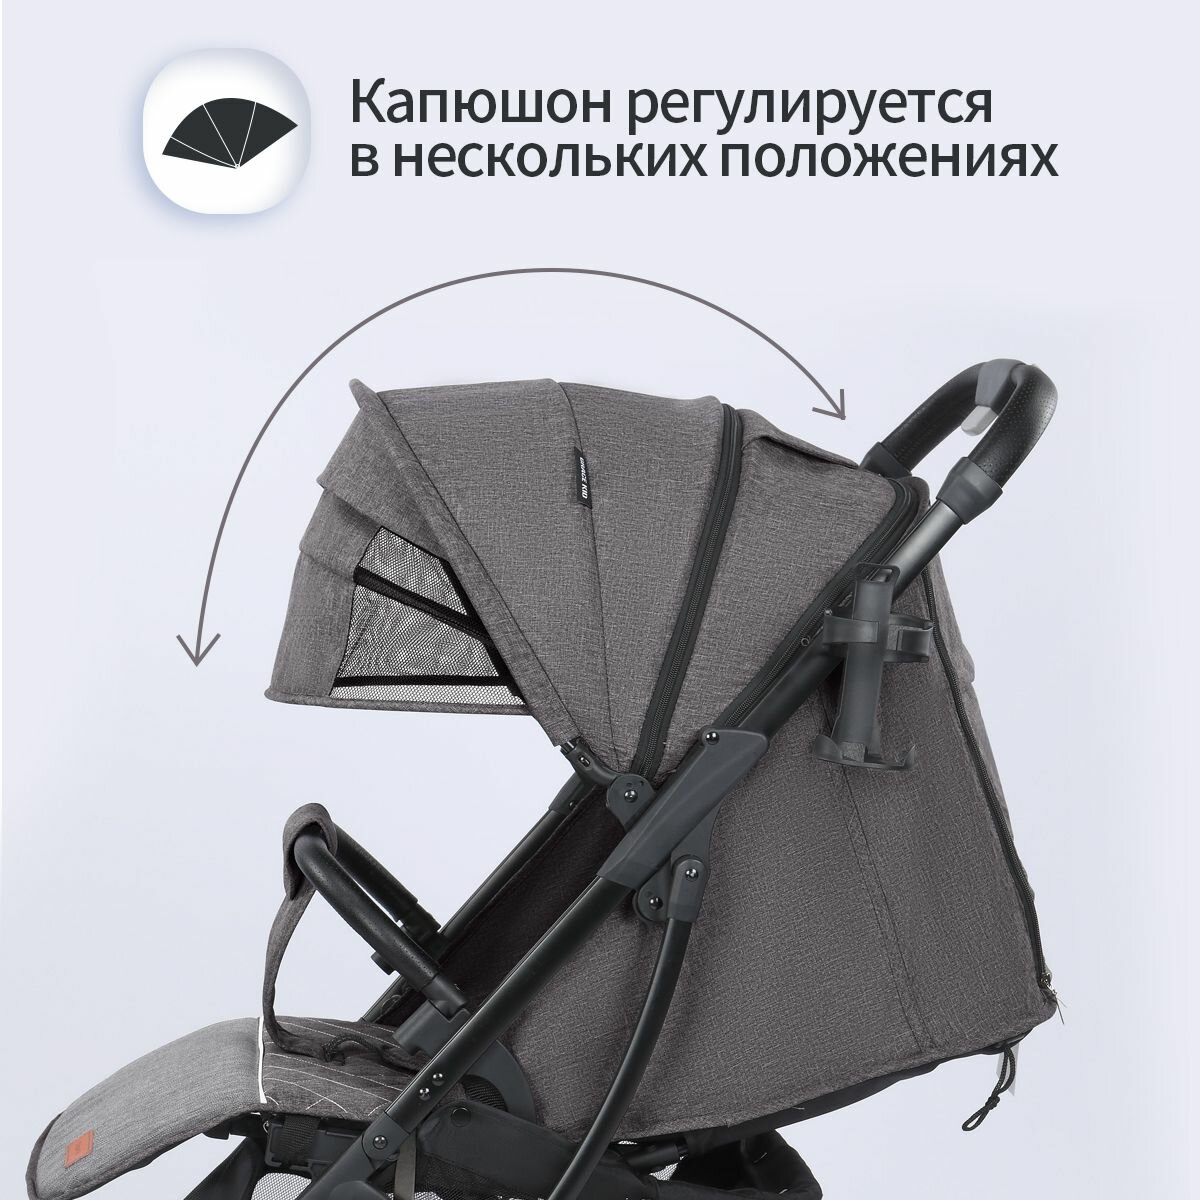 Коляска прогулочная всесезонная, легкая-BebeO, с москитной сеткой и дождевиком, универсальная для новорожденных. В комплекте подстаканник для коляски, сумка-рюкзак. Версия с механической регулировкой спинки